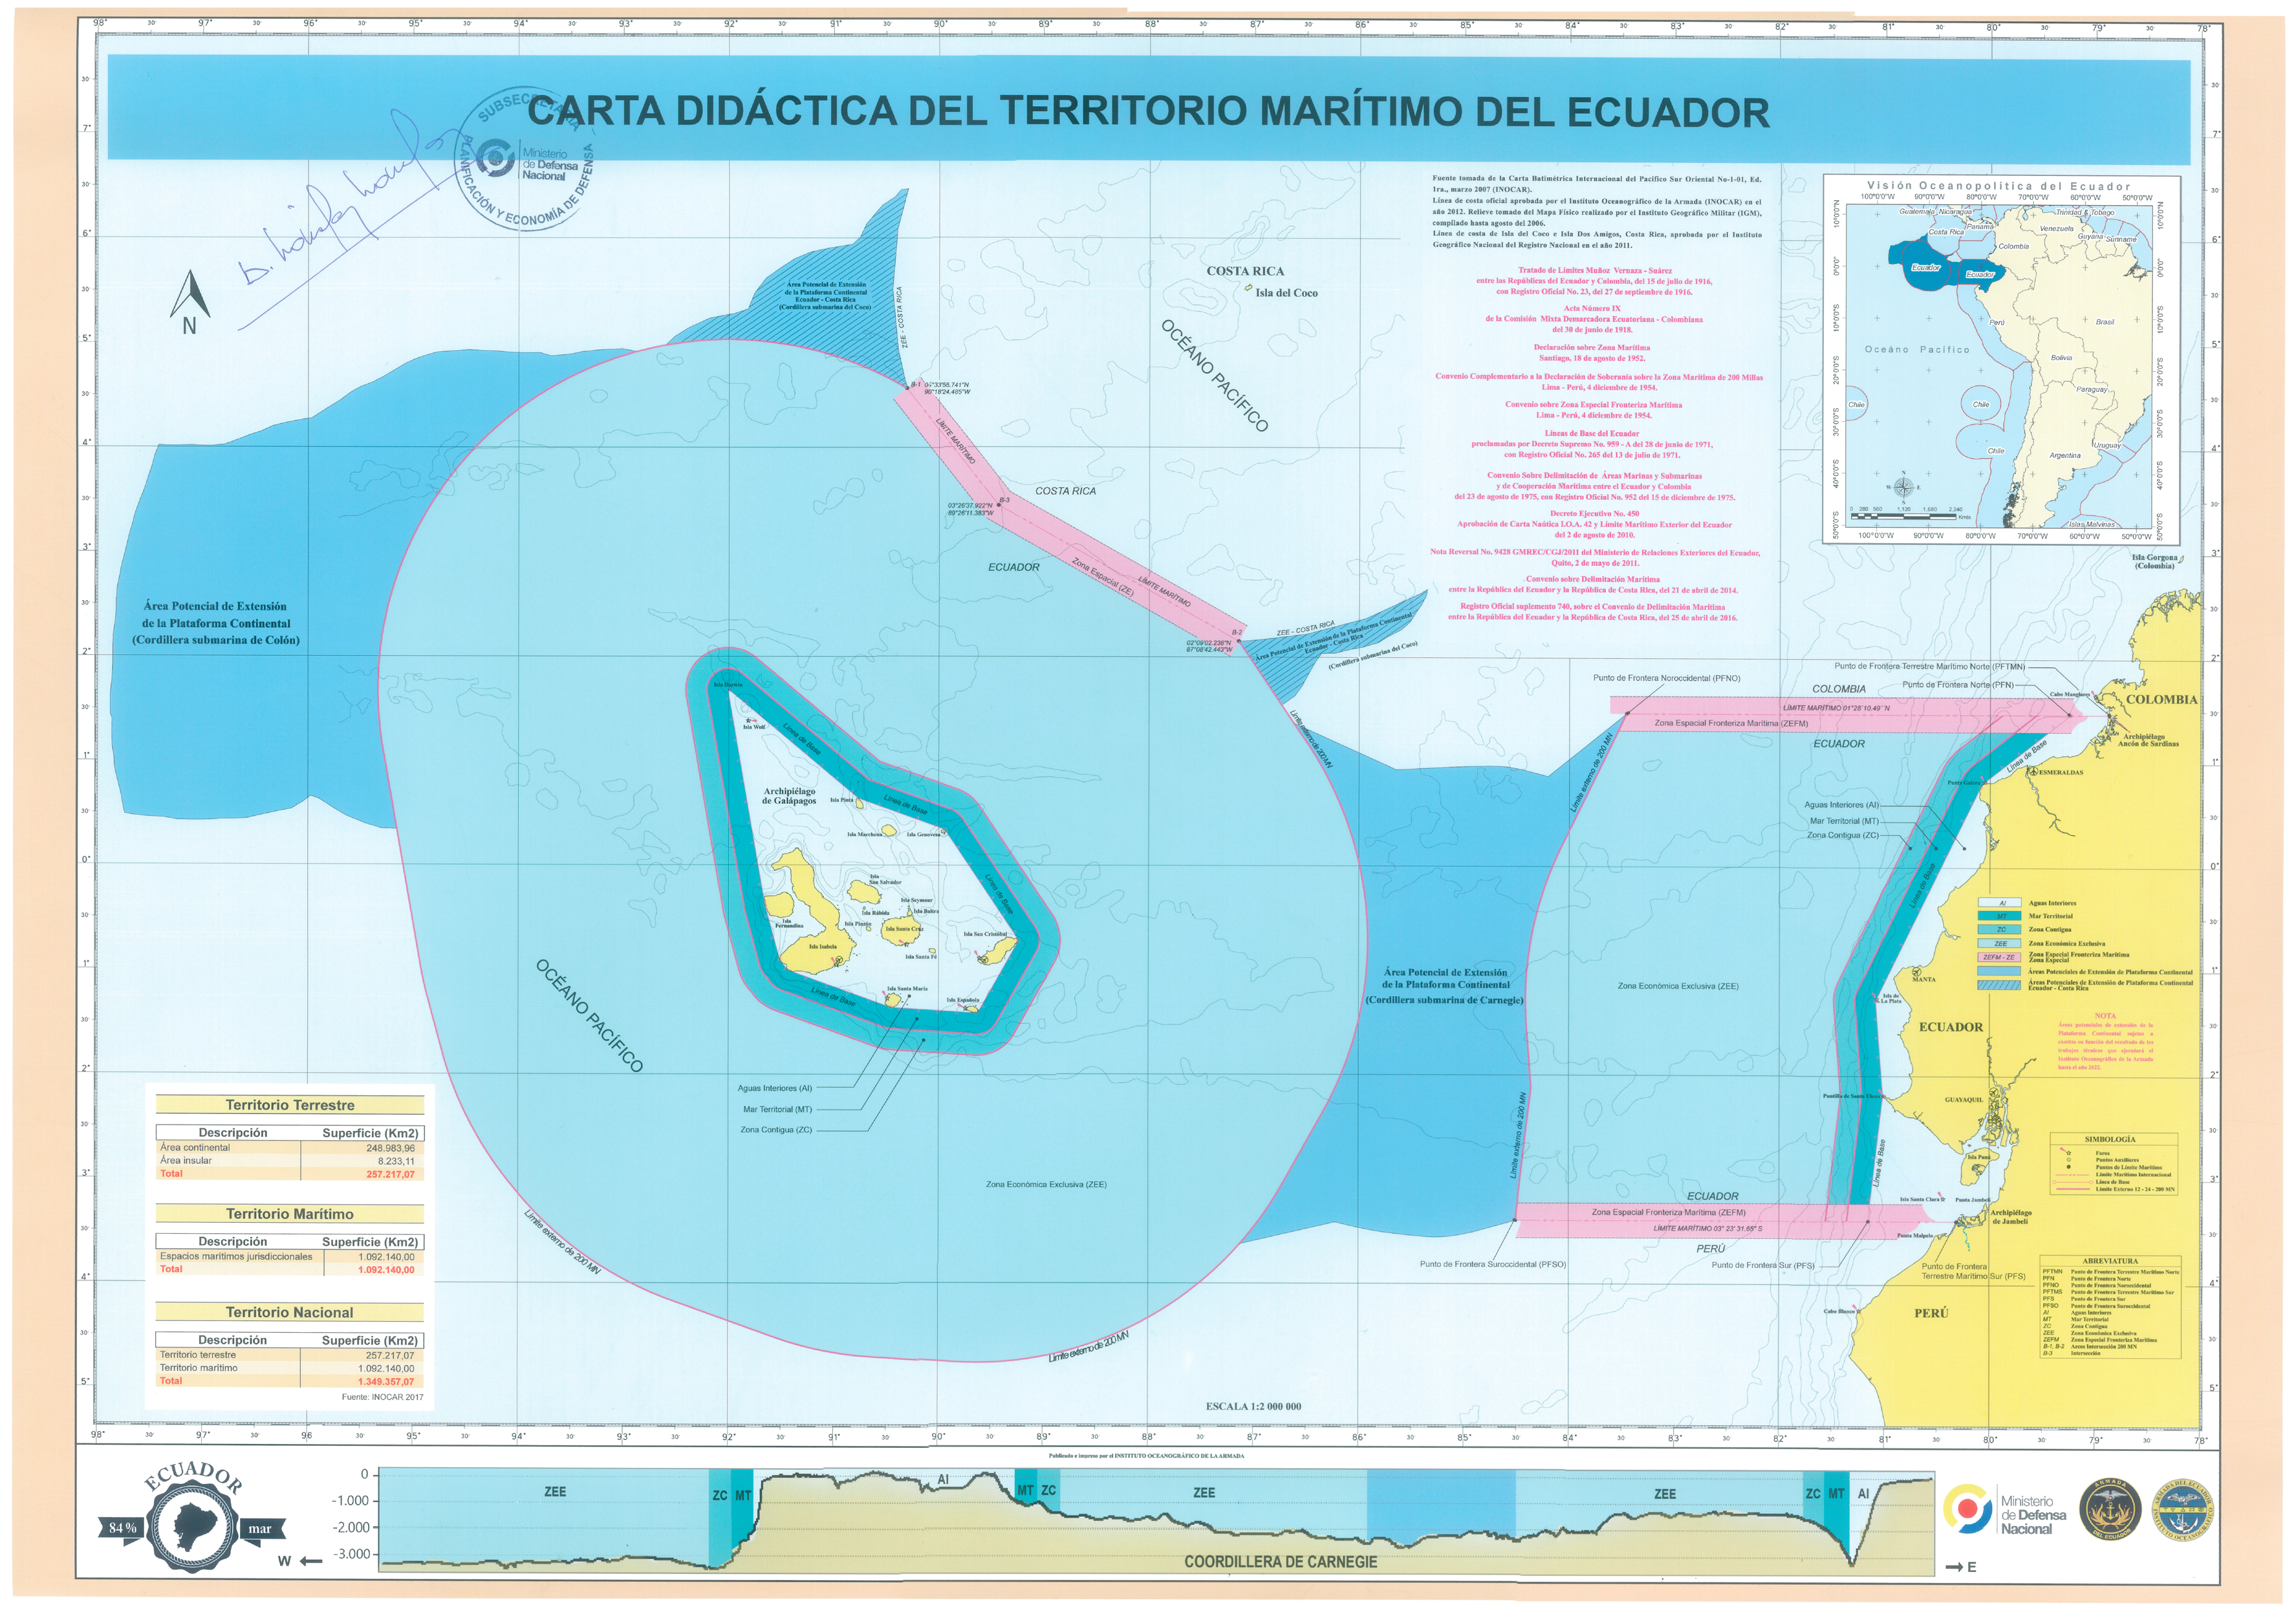 Carta Didactica del Territorio Marítimo - Armada del Ecuador_Página_1.png